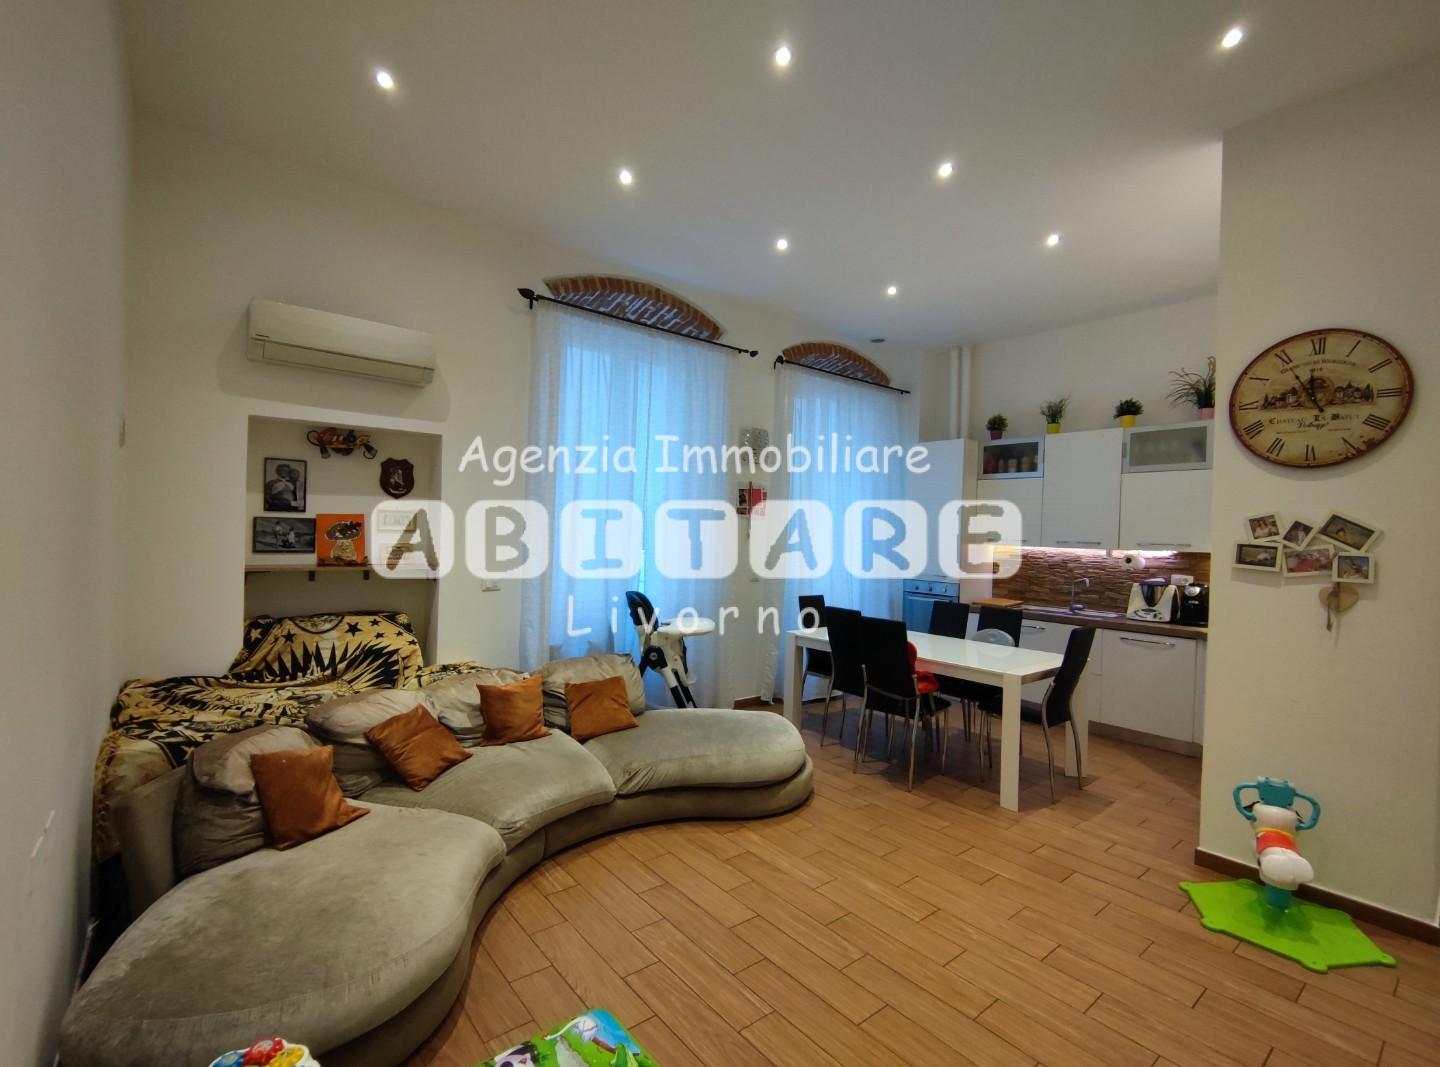 Appartamento in vendita a Livorno, 4 locali, prezzo € 165.000 | PortaleAgenzieImmobiliari.it